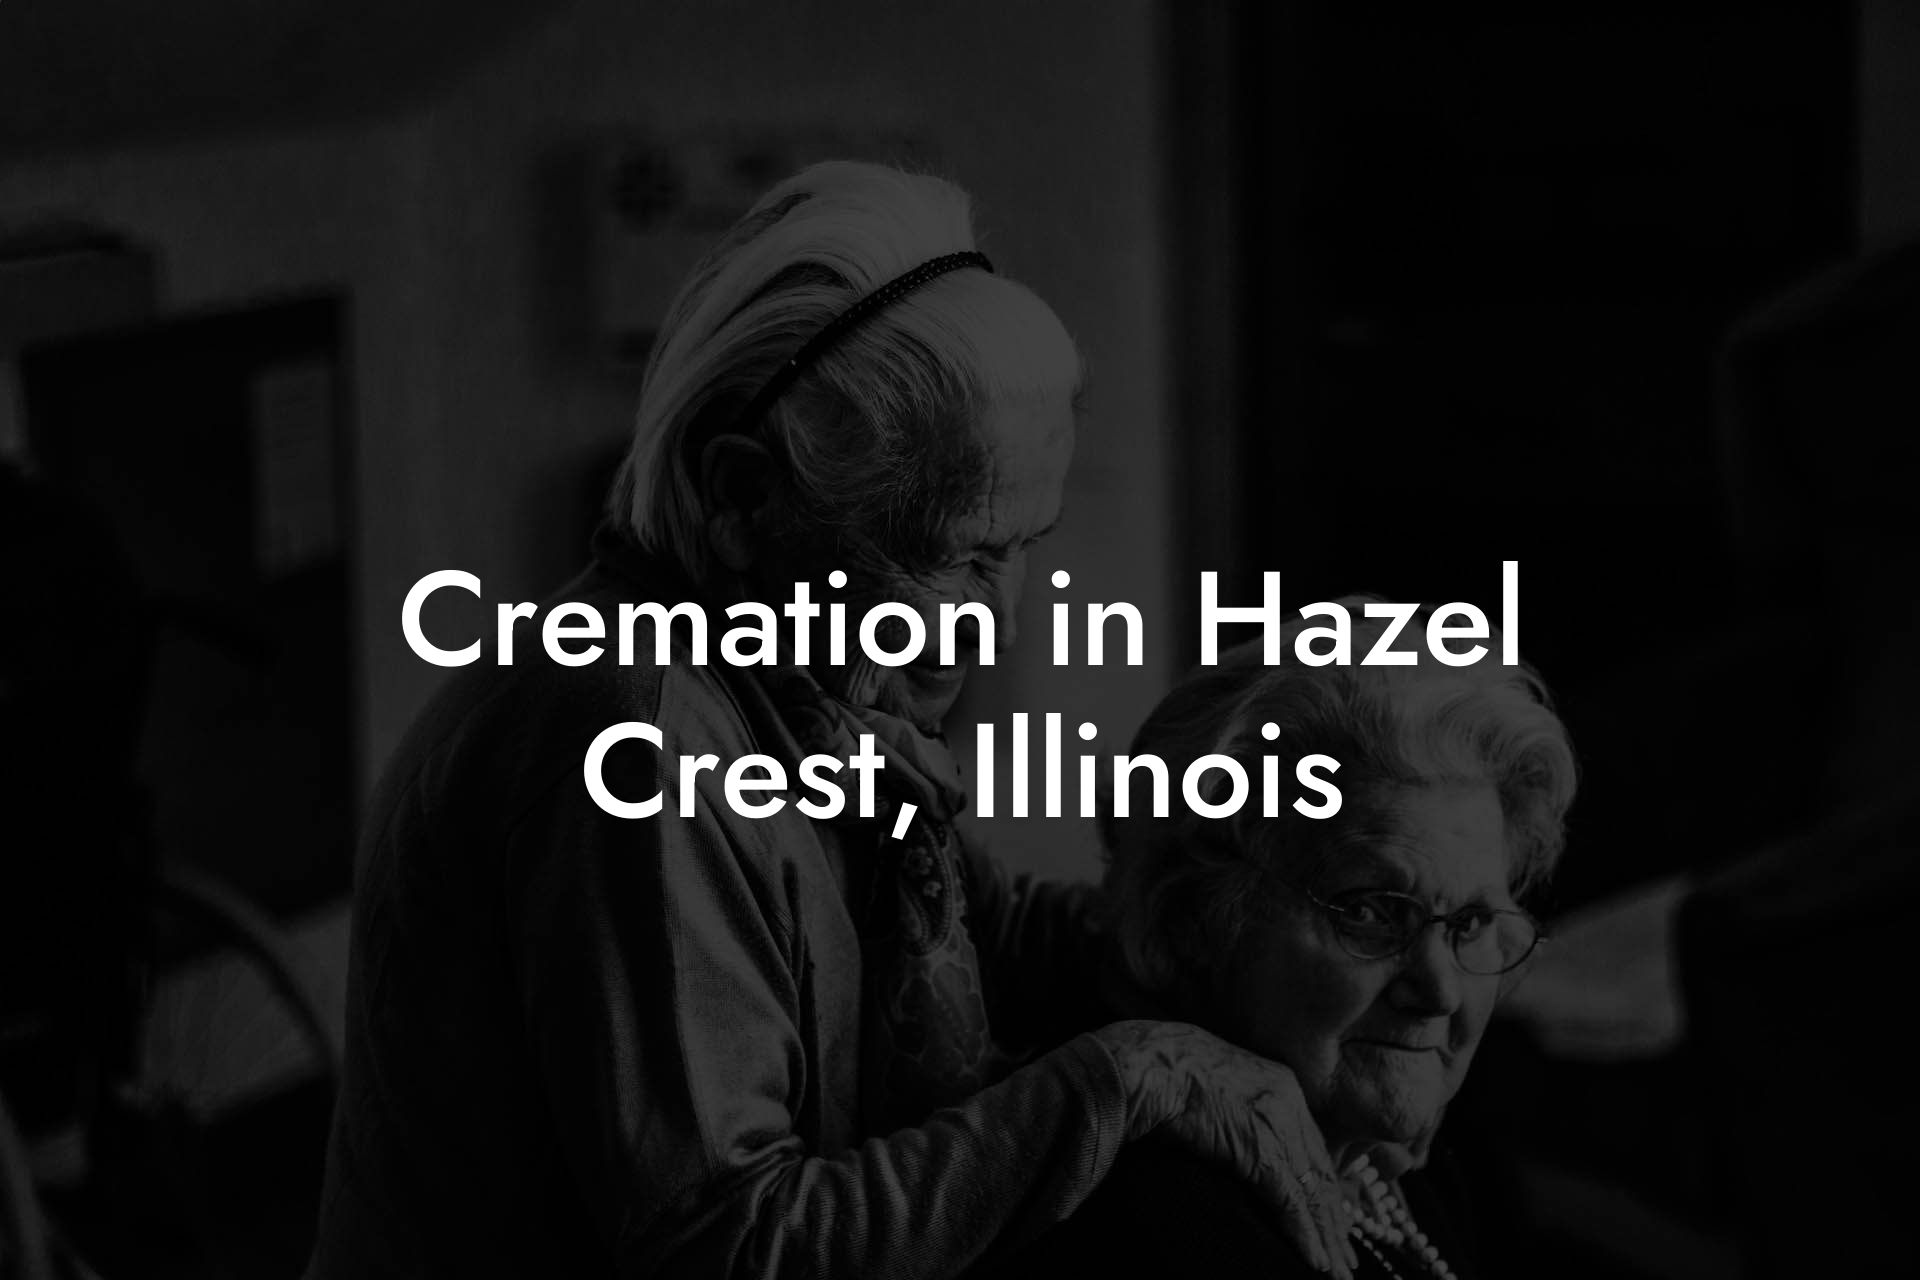 Cremation in Hazel Crest, Illinois